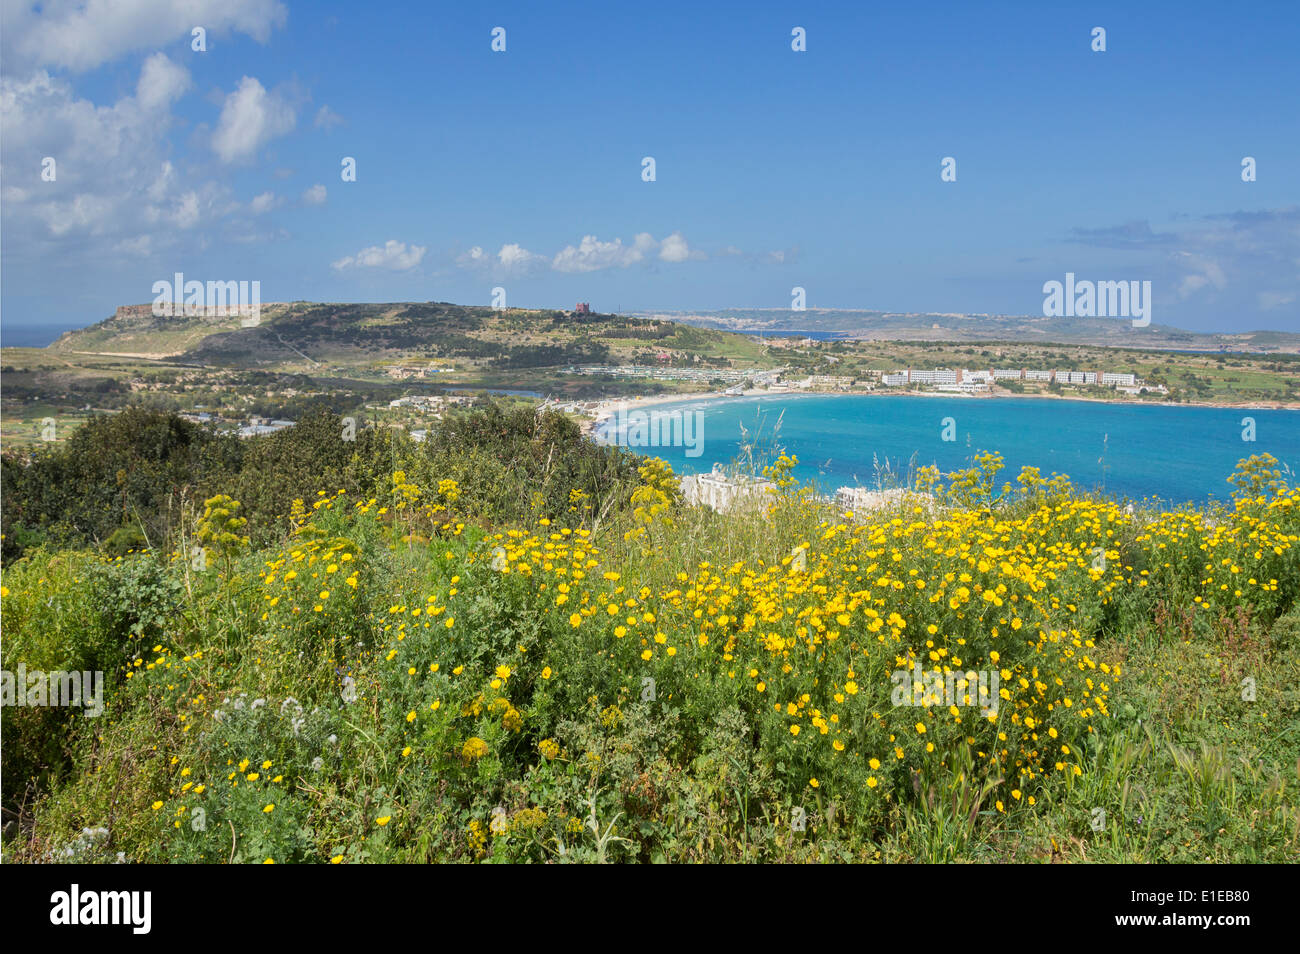 Mirando a la bahía de Mellieha y gozo de Mellieha, Malta, Europa. Foto de stock